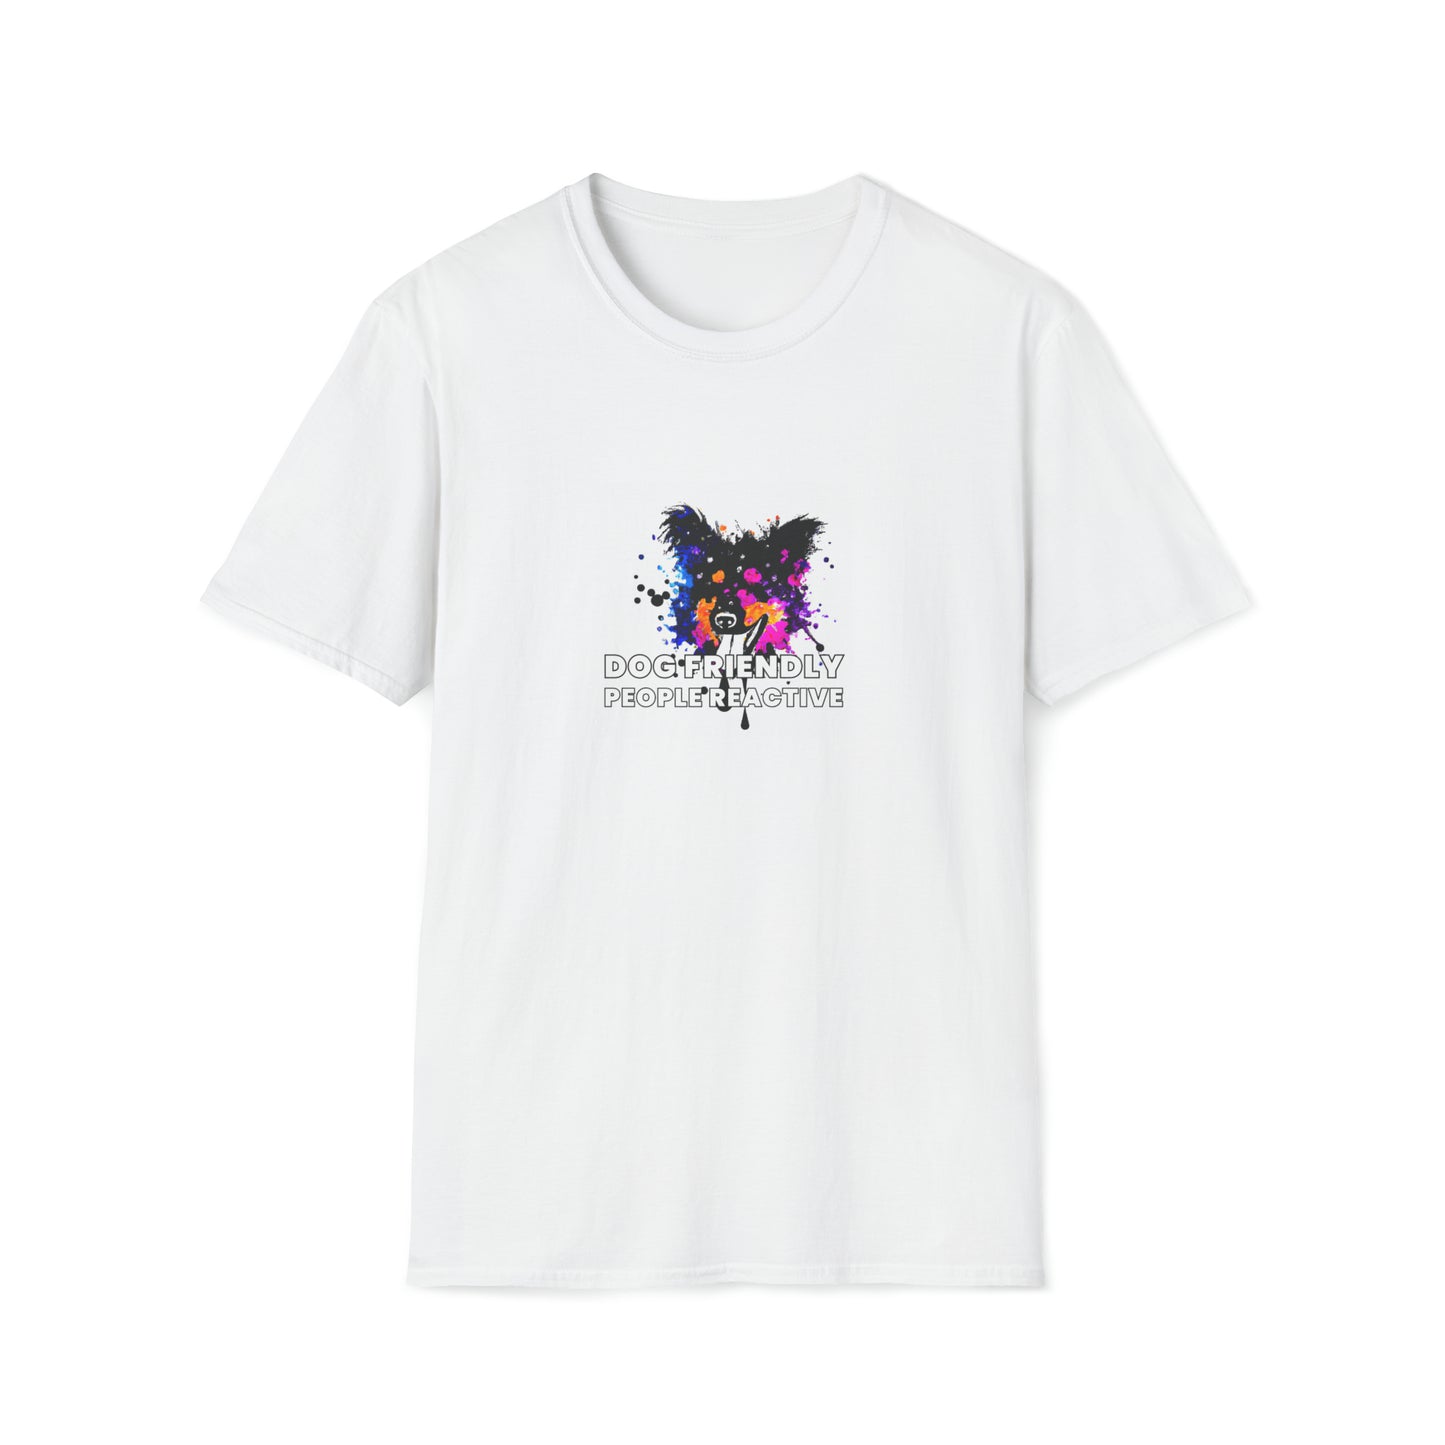 Murjeaux Streetwear - "Dog Friendly, People Reactive" (colored swirl) Unisex Tee